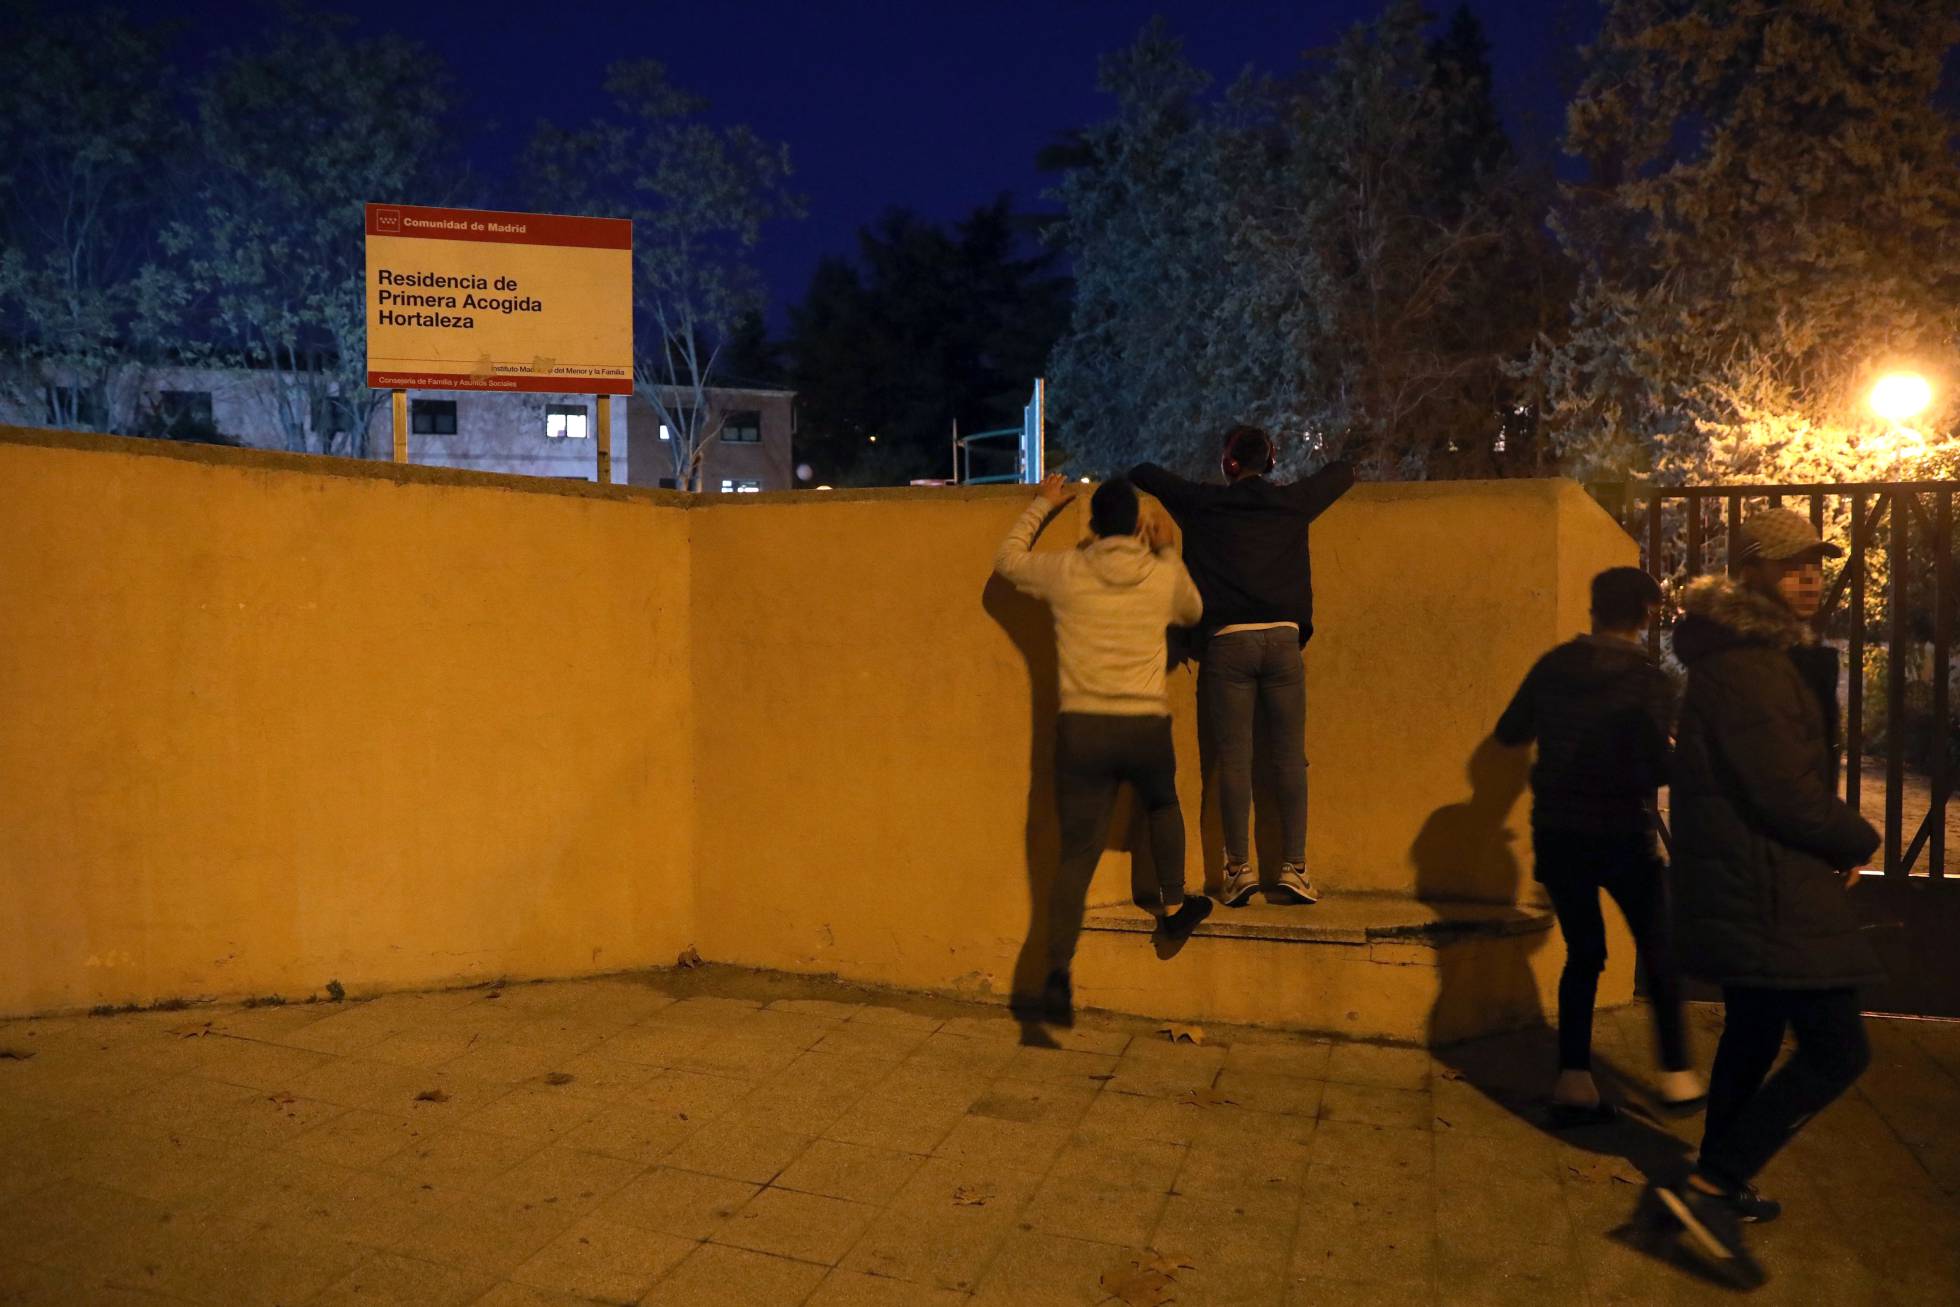 solo - Los inmigrantes acogidos en el centro de menores de Carmona, fuera de control 1544560718_786076_1544561131_noticia_normal_recorte1